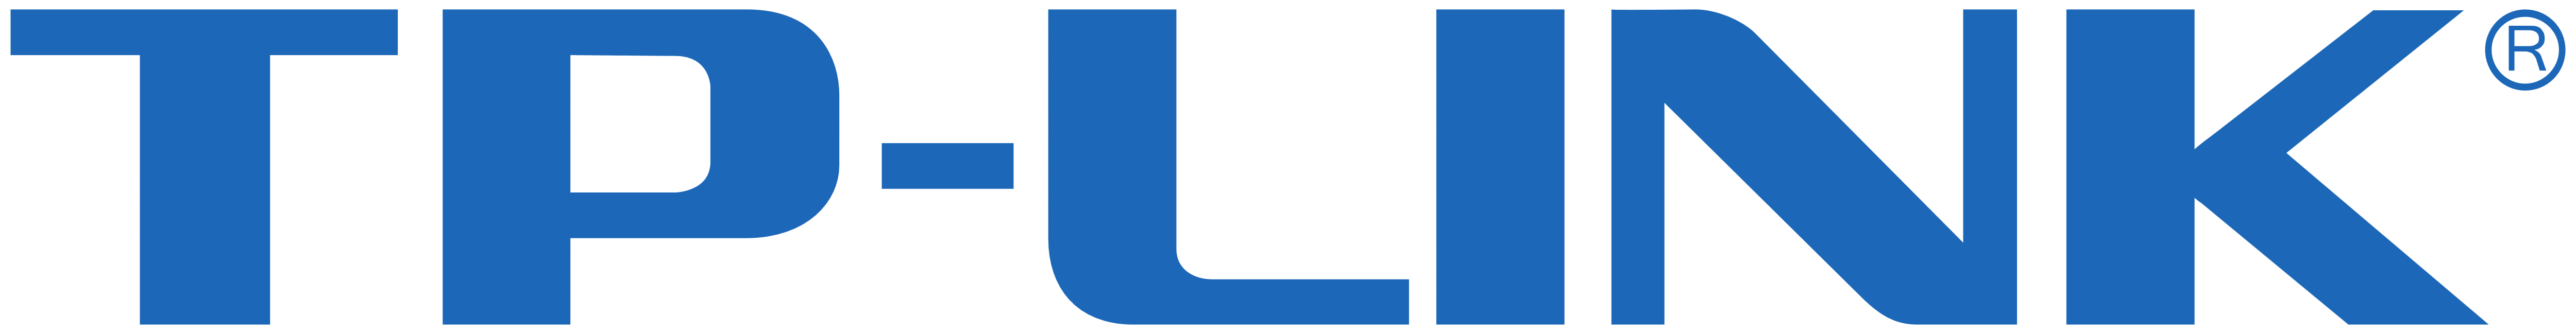 TP-LINK Logo - TP-LINK – Logos Download